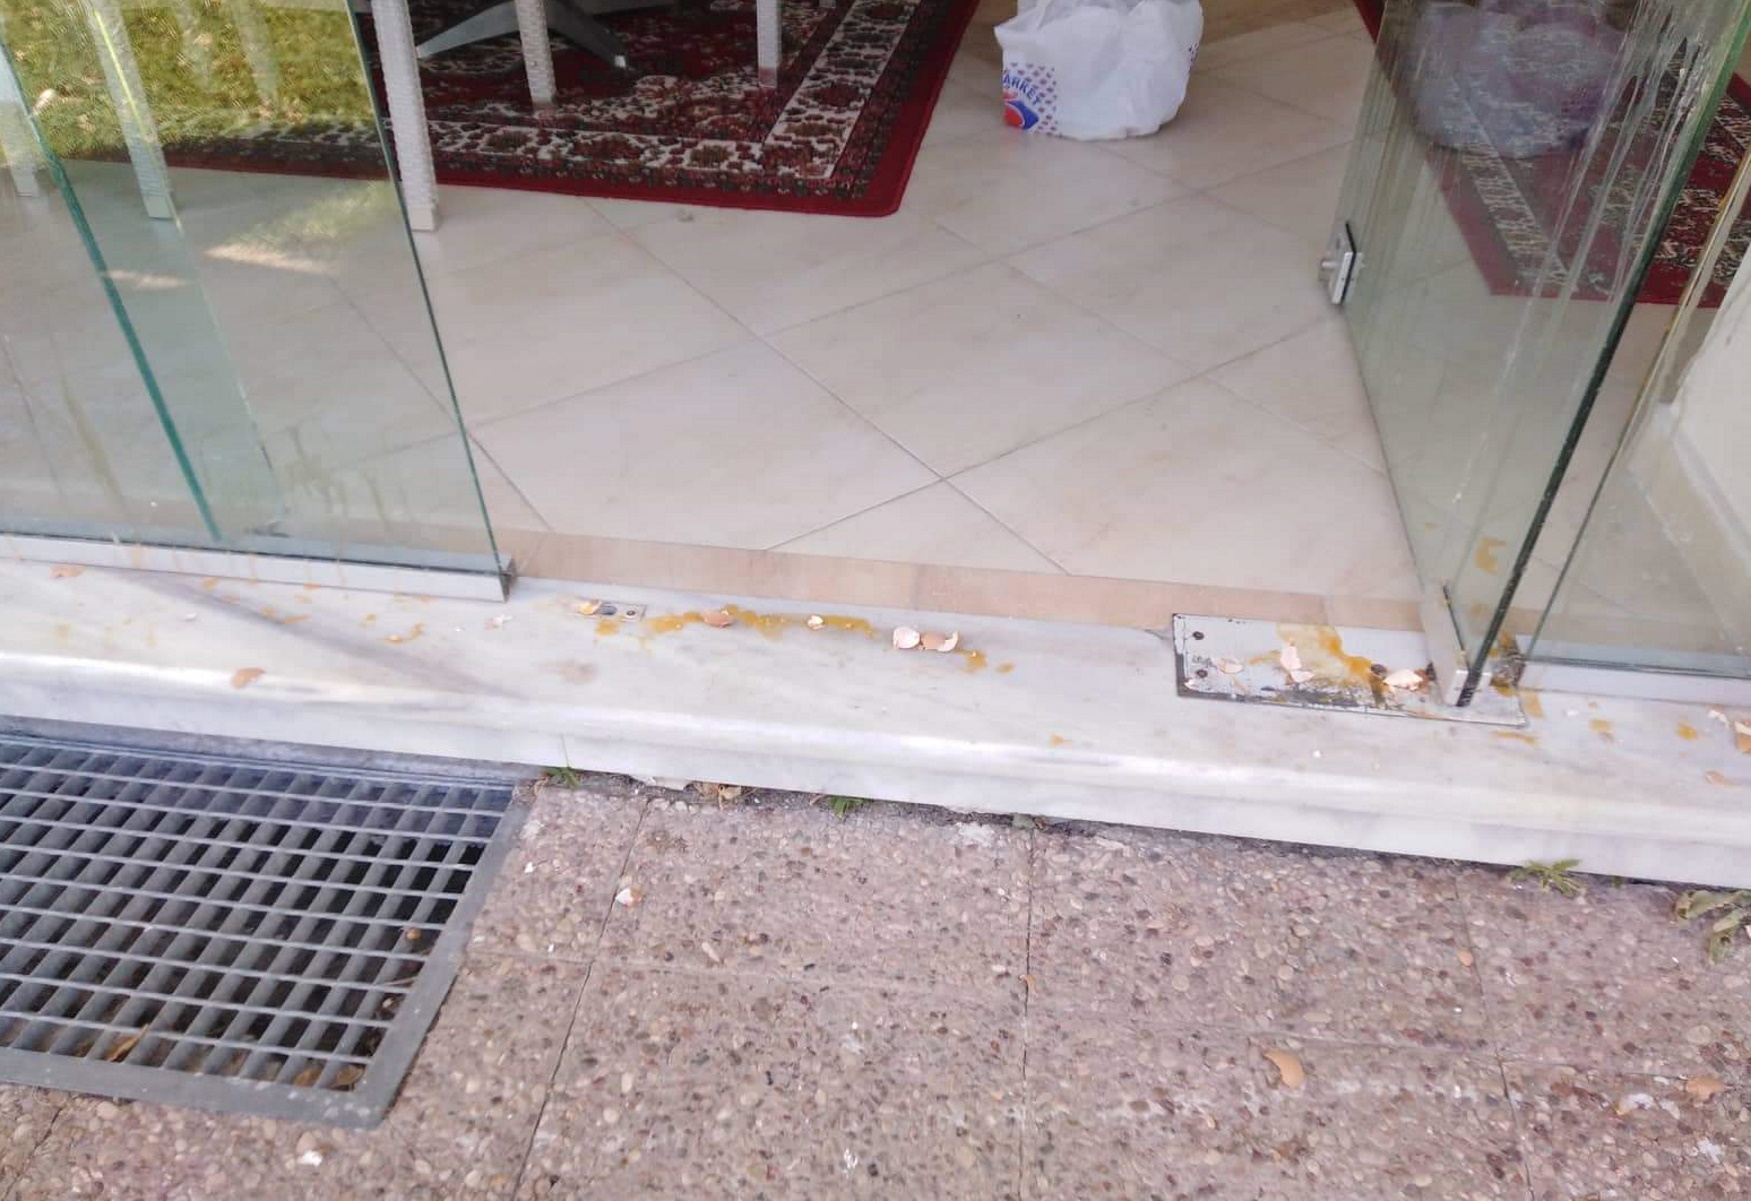 ΣΥΡΙΖΑ για επίθεση με αυγά στα γραφεία στη Σίνδο: Άνανδρη επίθεση και στην ίδια τη Δημοκρατία